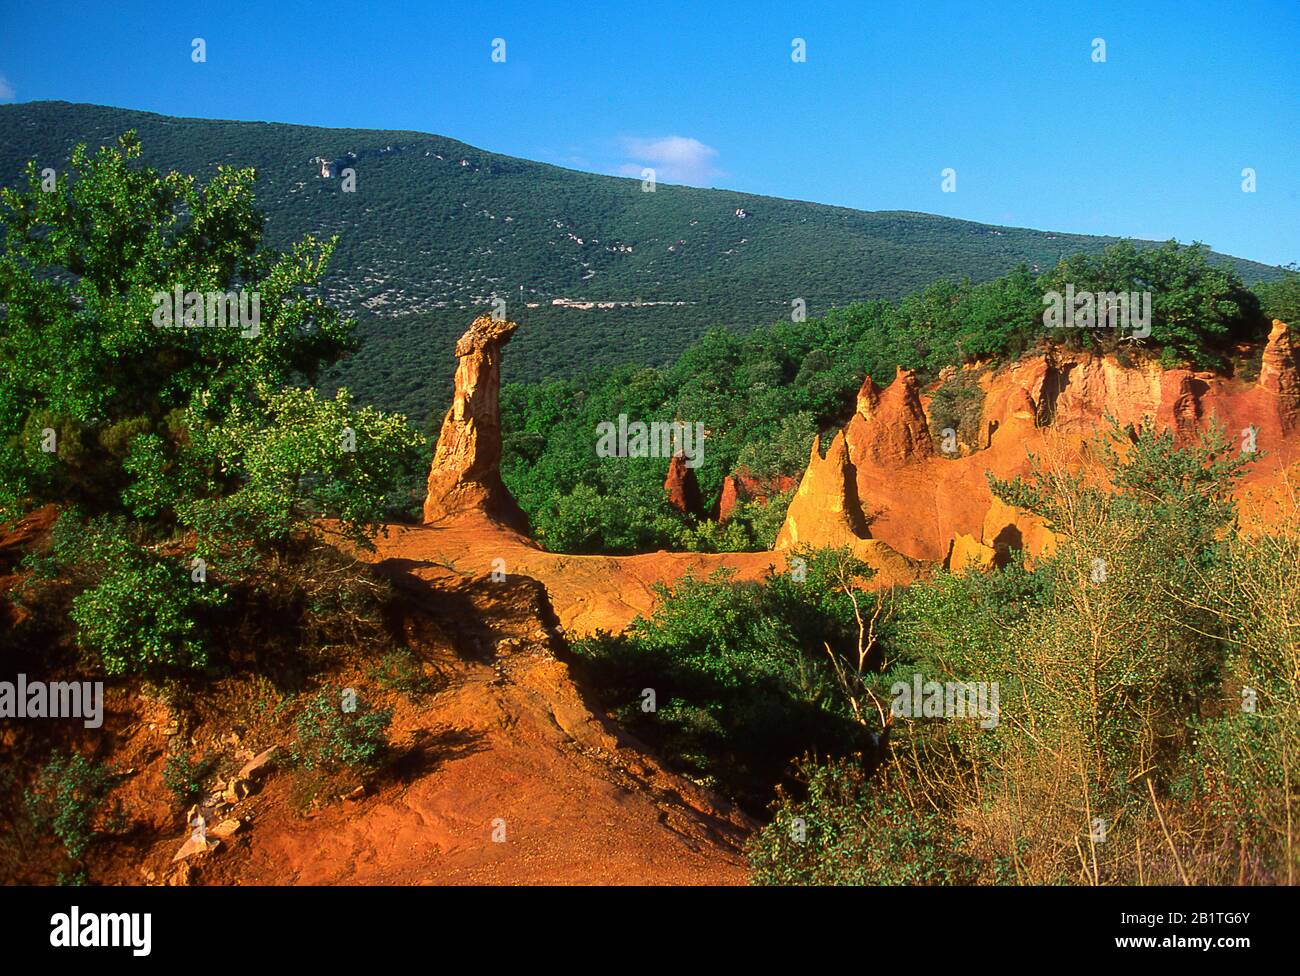 Falaises d'ocre dans le Colorado Provencal, Rustrel, Vaucluse, Povence Alpes Cote d'Azur, France Banque D'Images